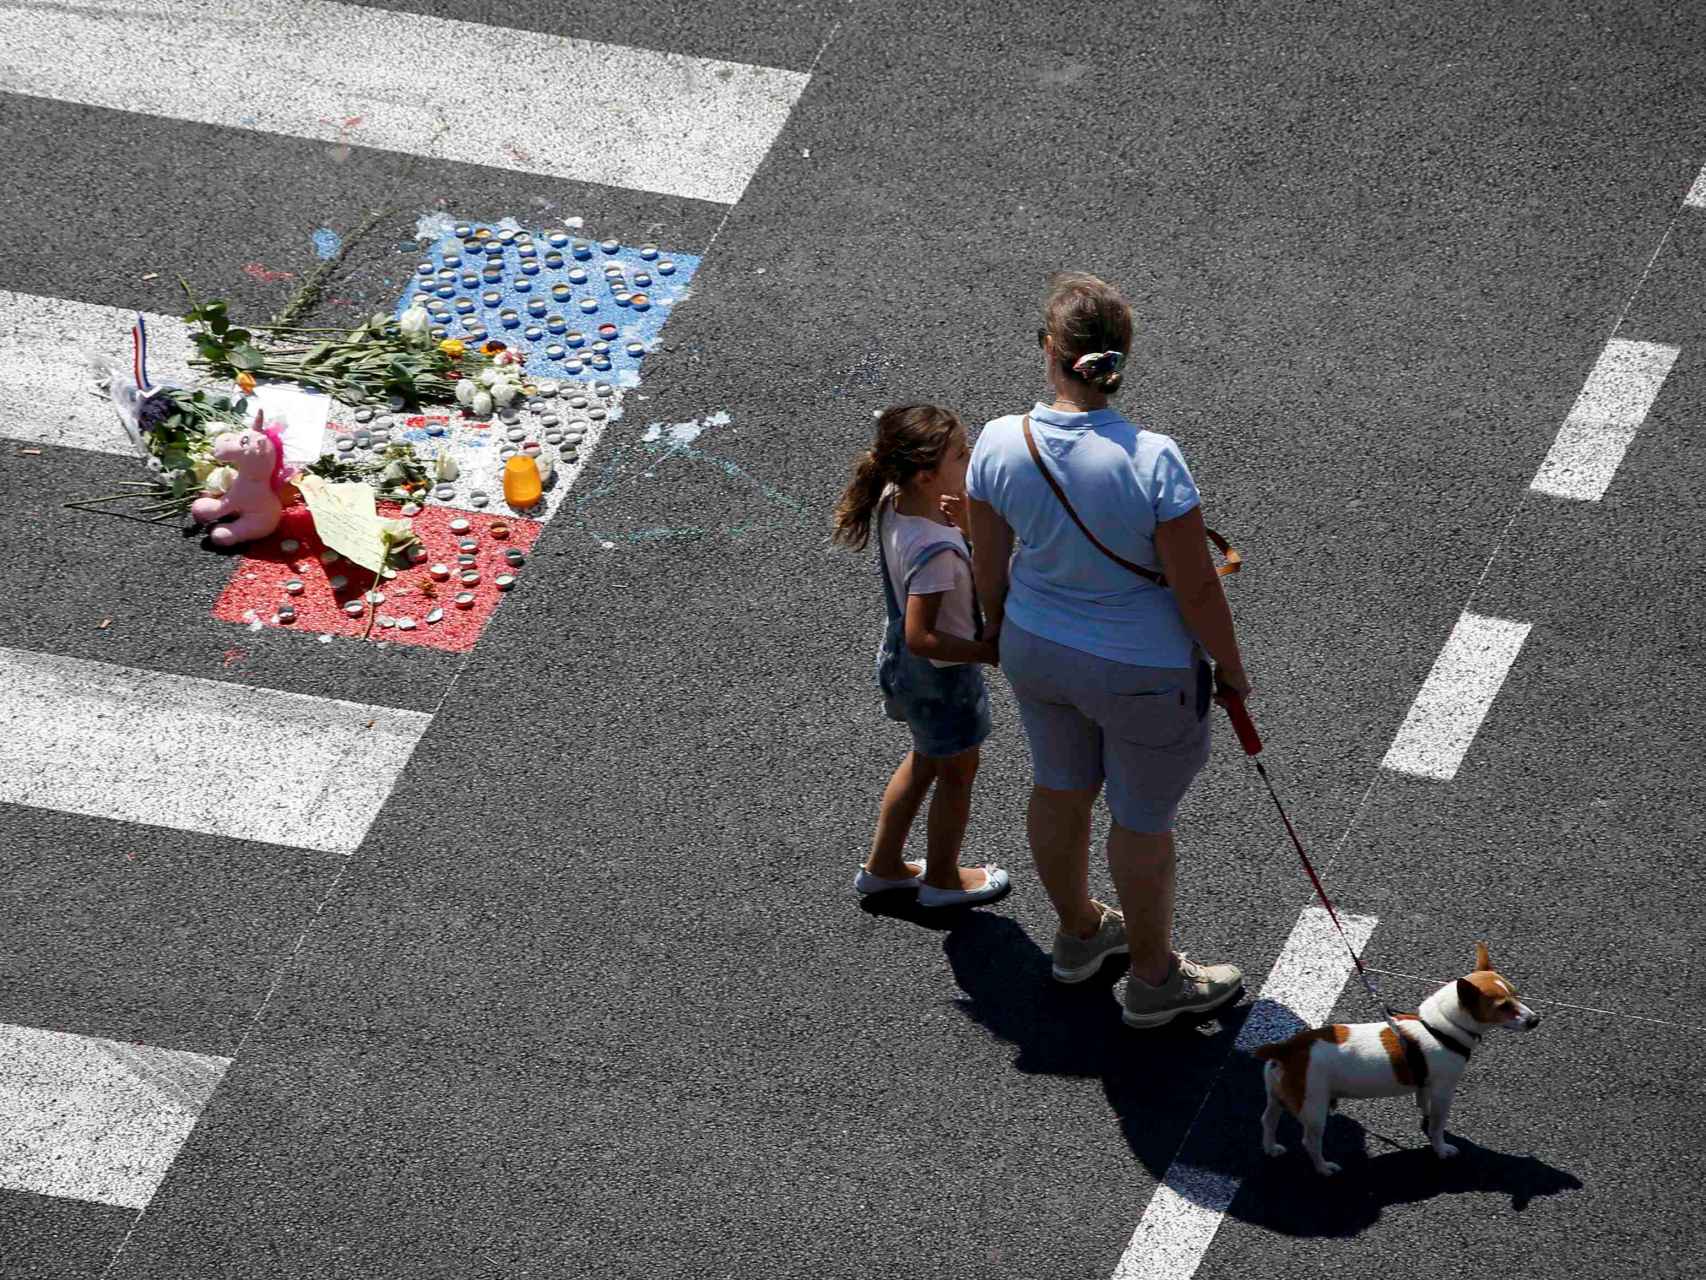 Un monumento improvisado recuerda a las víctimas de Niza en el paseo de los Ingleses.